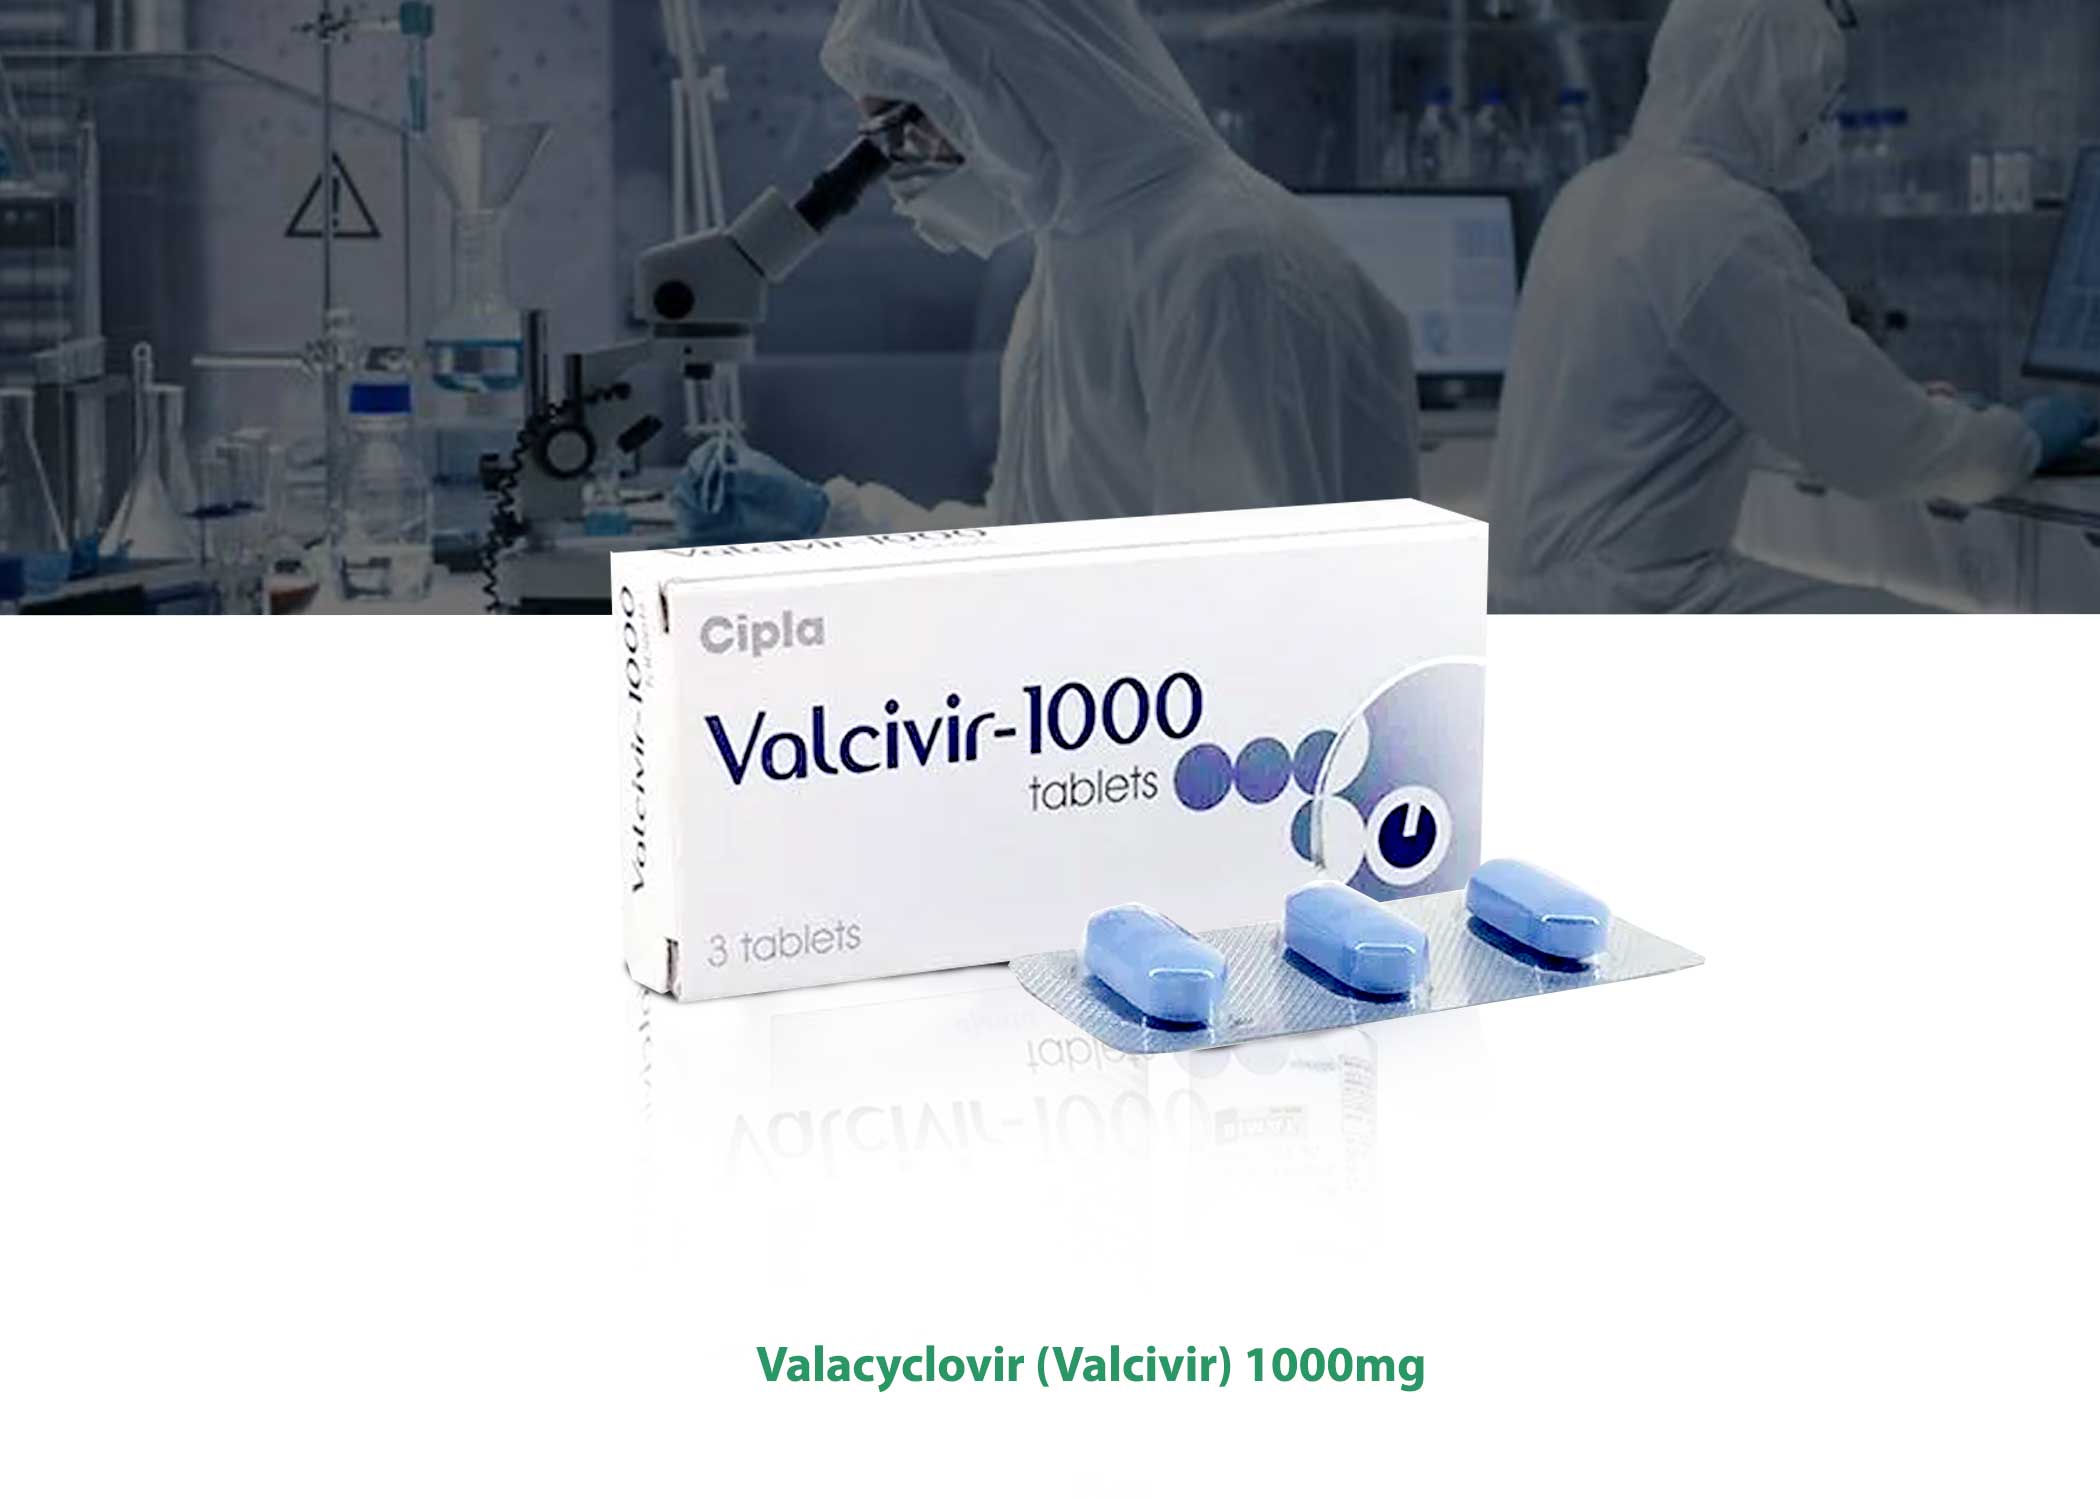 Valcivir-1000